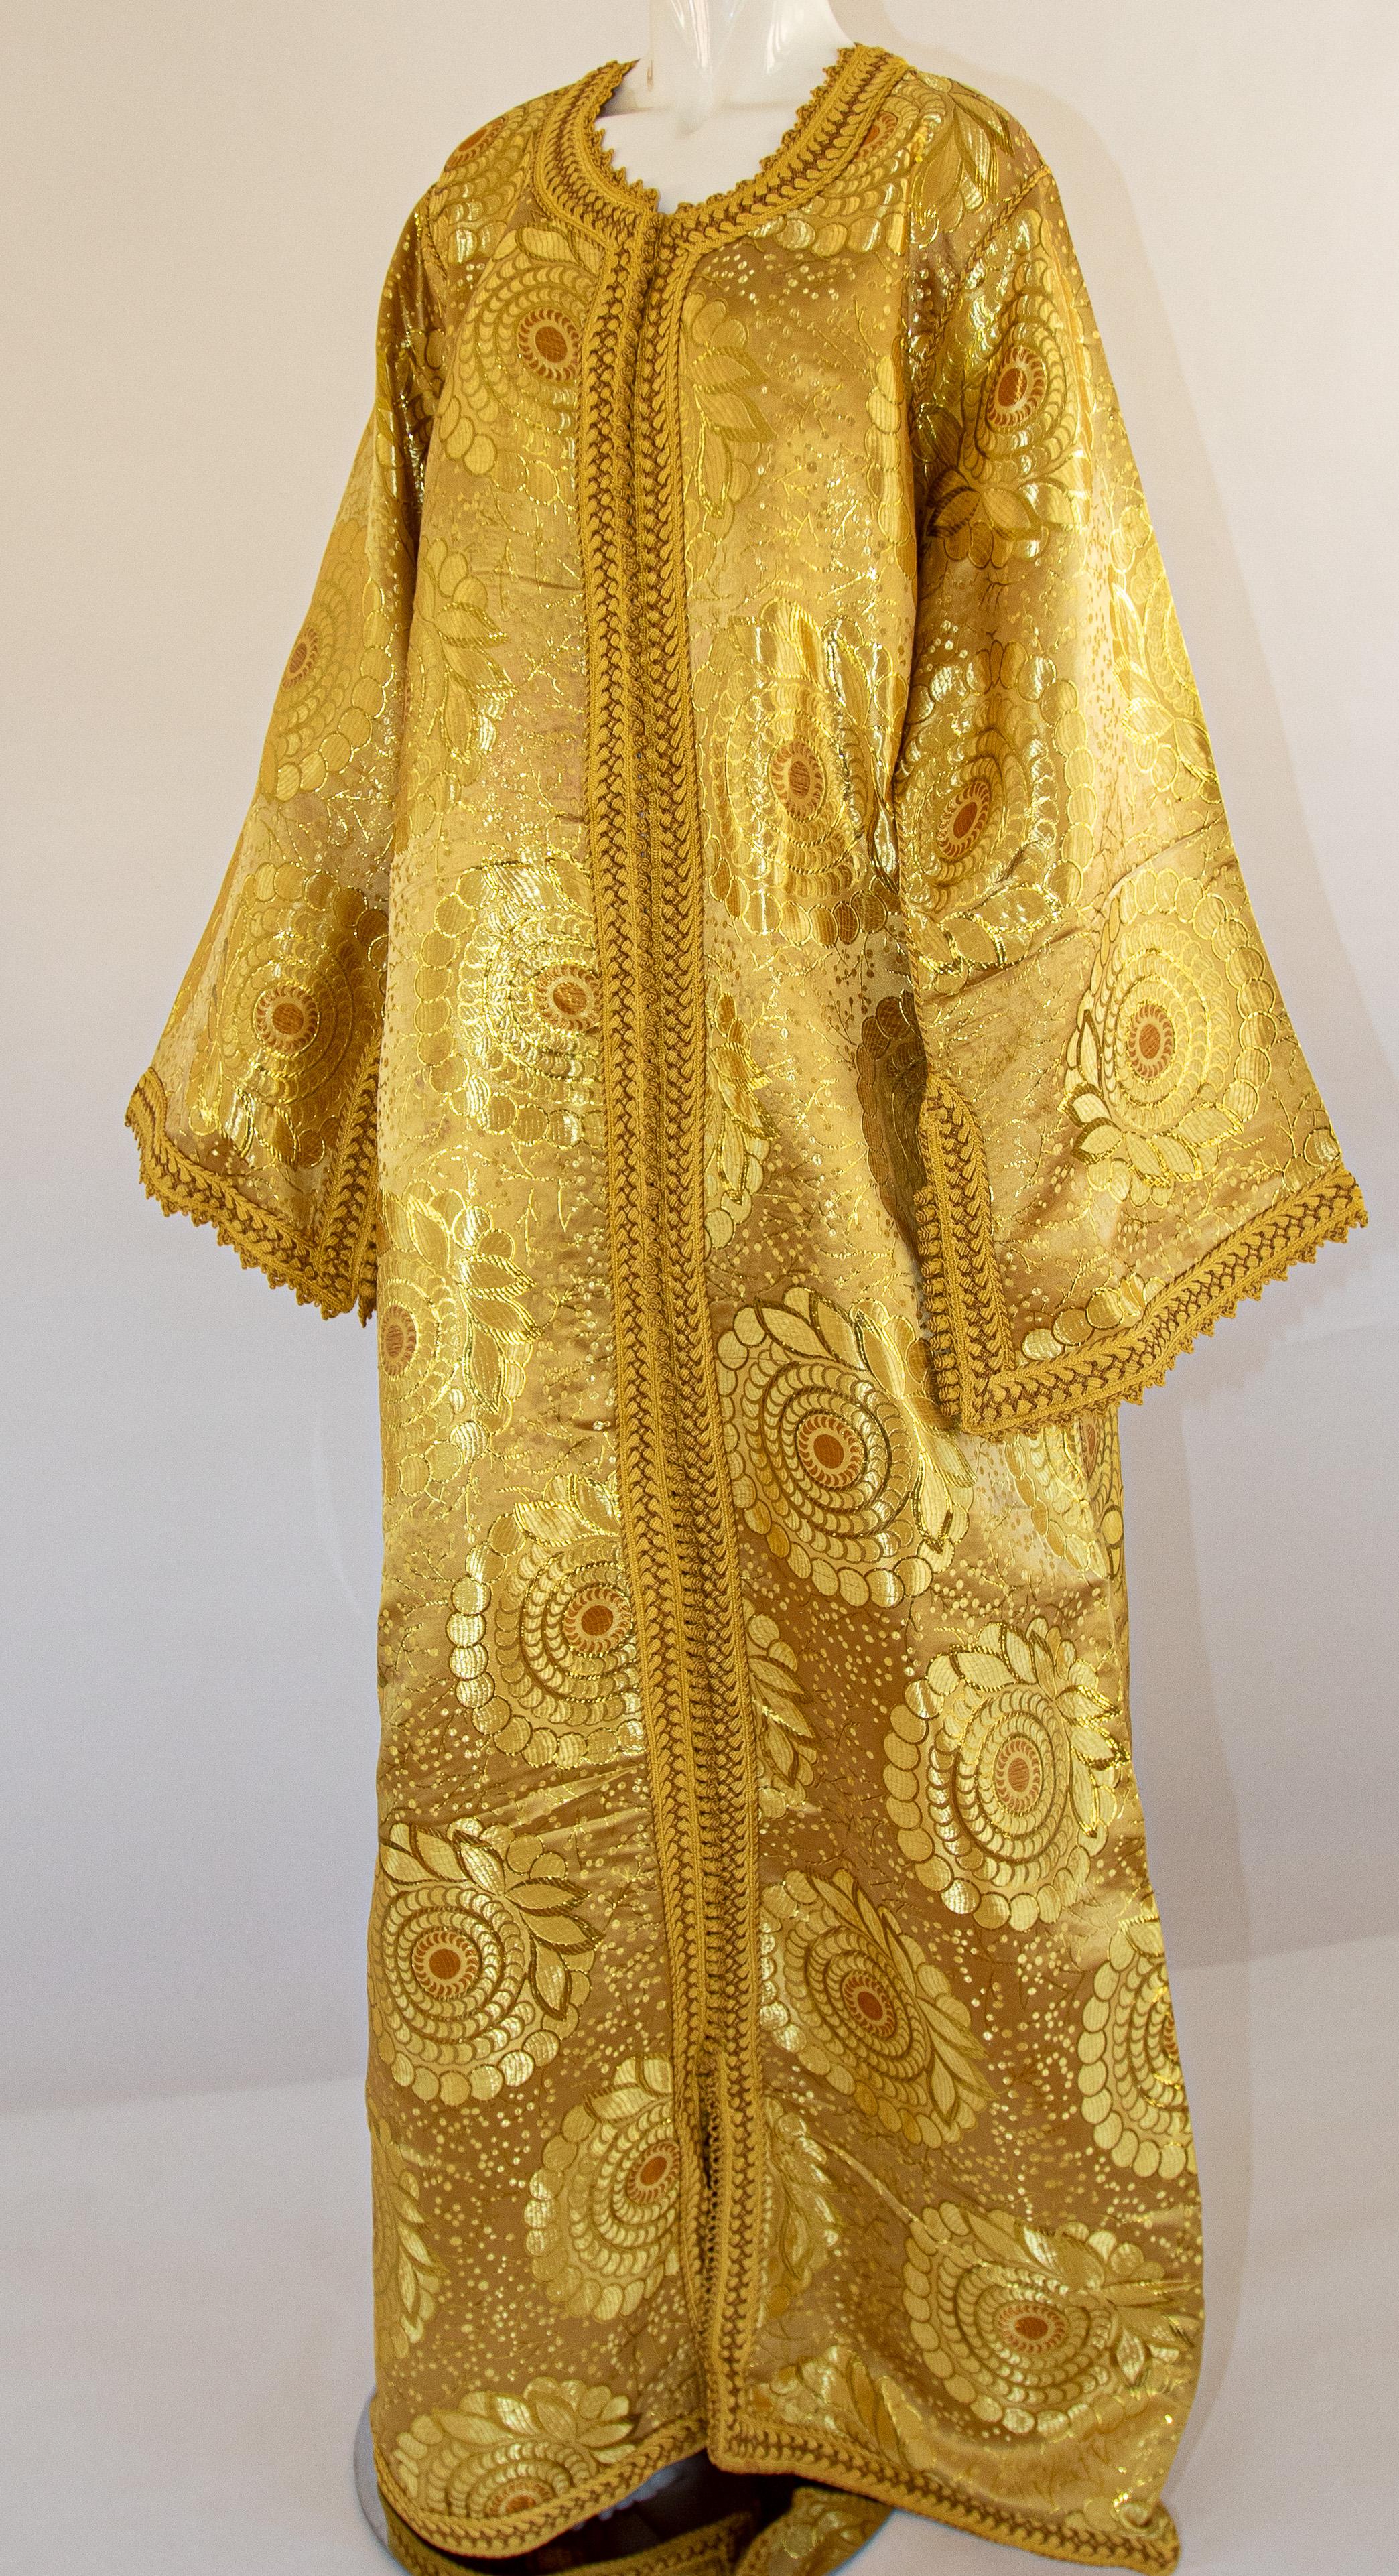 Marokkanisches exotisches Vintage-Kaftan-Kleid aus goldenem Metallbrokat, ca. 1970er Jahre.
Der luxuriöse maurische Kaftan ist mit glänzendem Goldmetallic-Brokat gestaltet.
Die Vorderseite des eleganten Kaftan-Kleides ist vorne mit gewebten goldenen